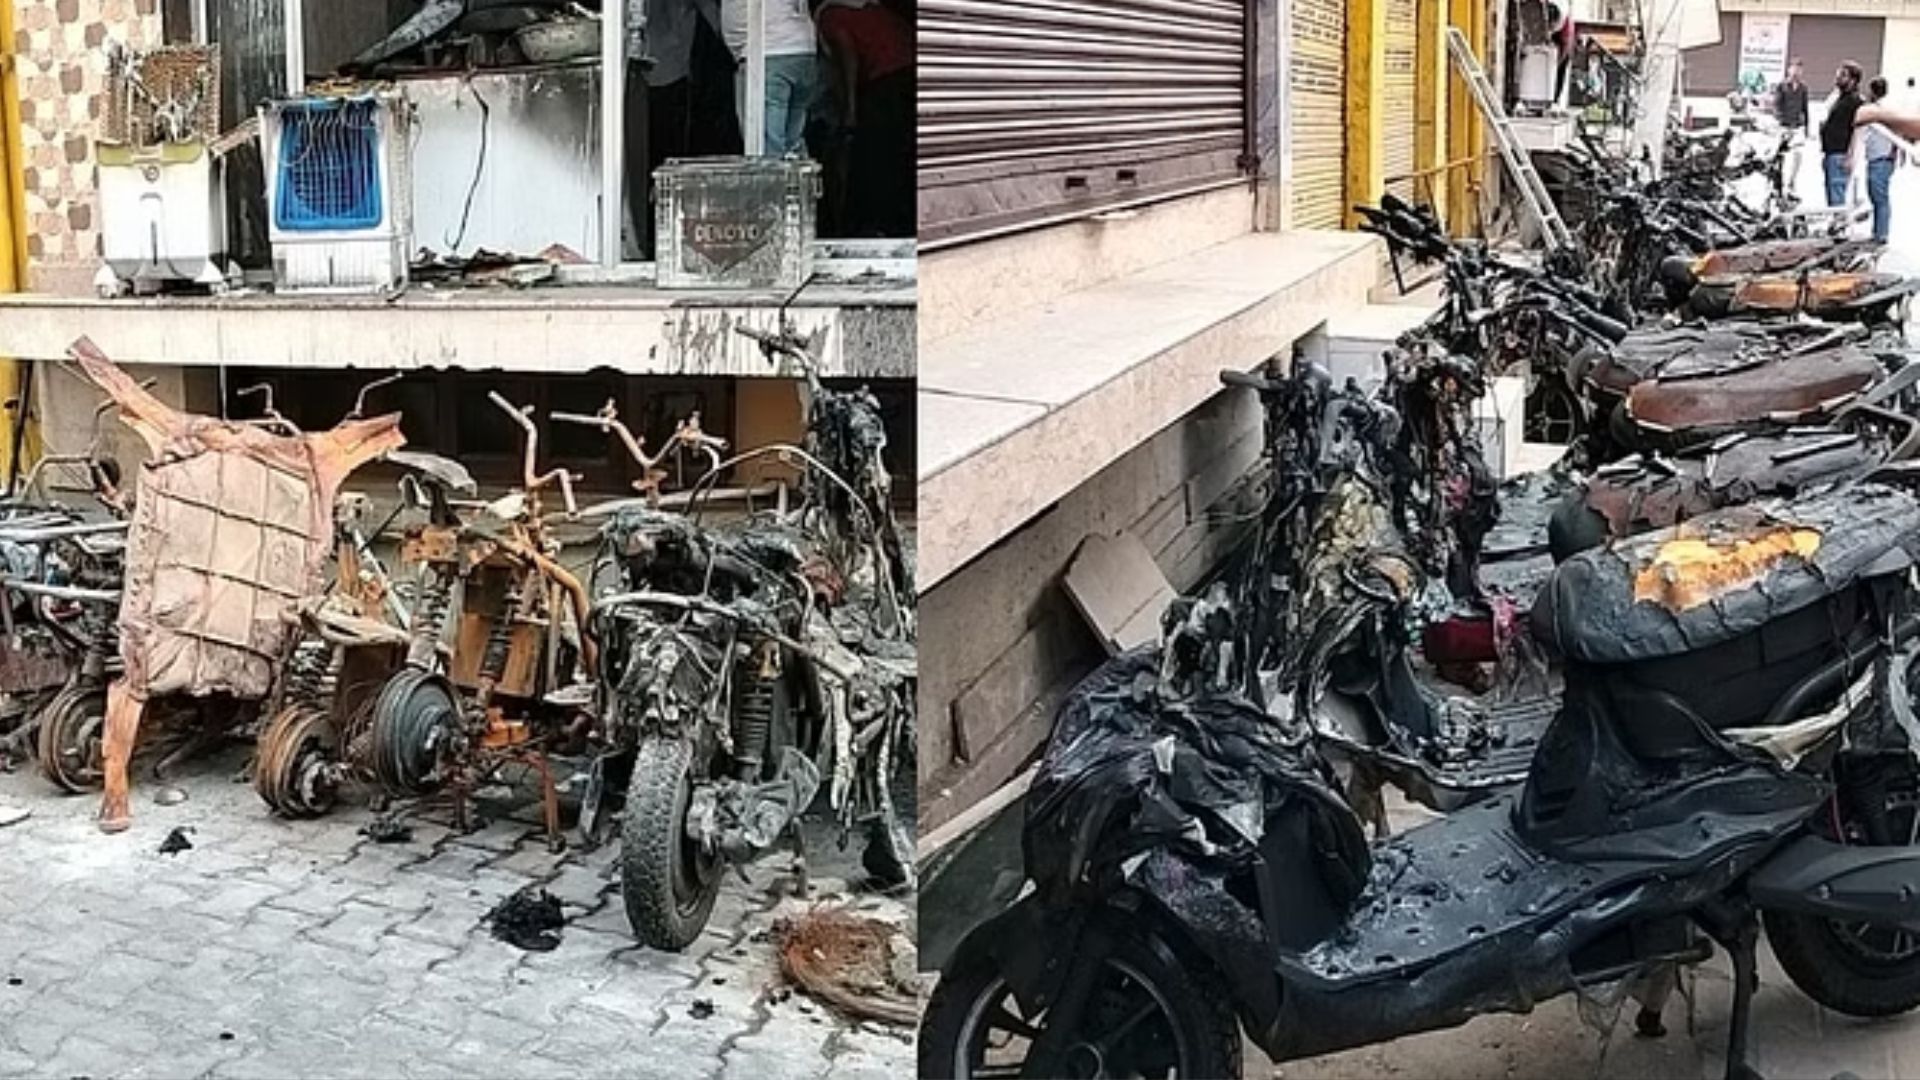 मथुरा: ई-बाइक शोरूम में लगी भीषण आग...50 वाहन जलकर खाक, लपटें देखकर सहमे लोग